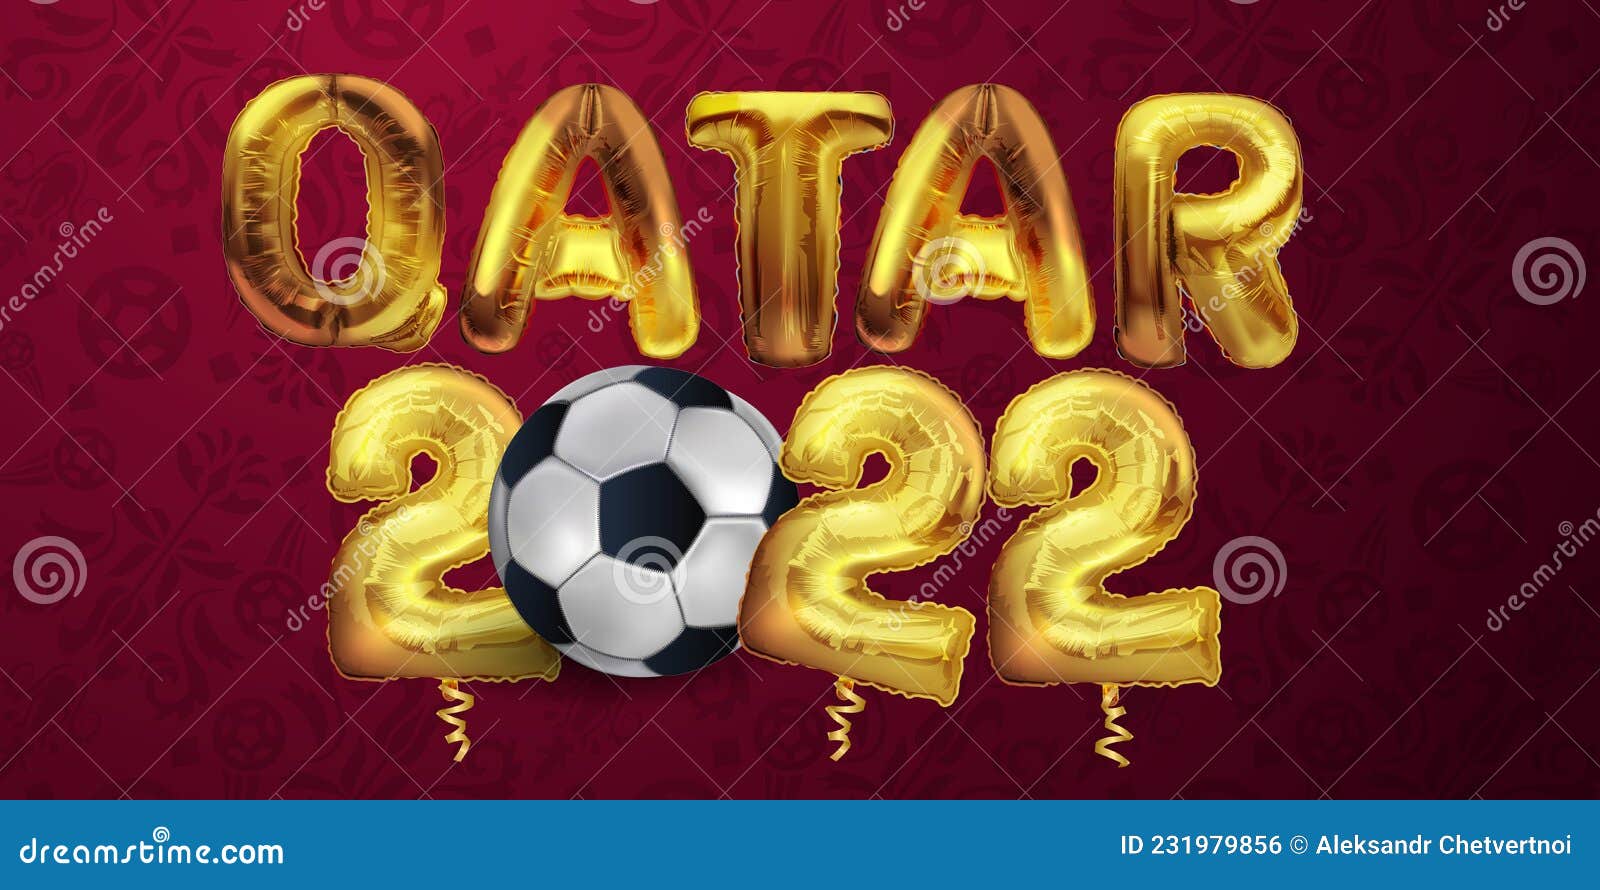 New Year 2022 Qatar